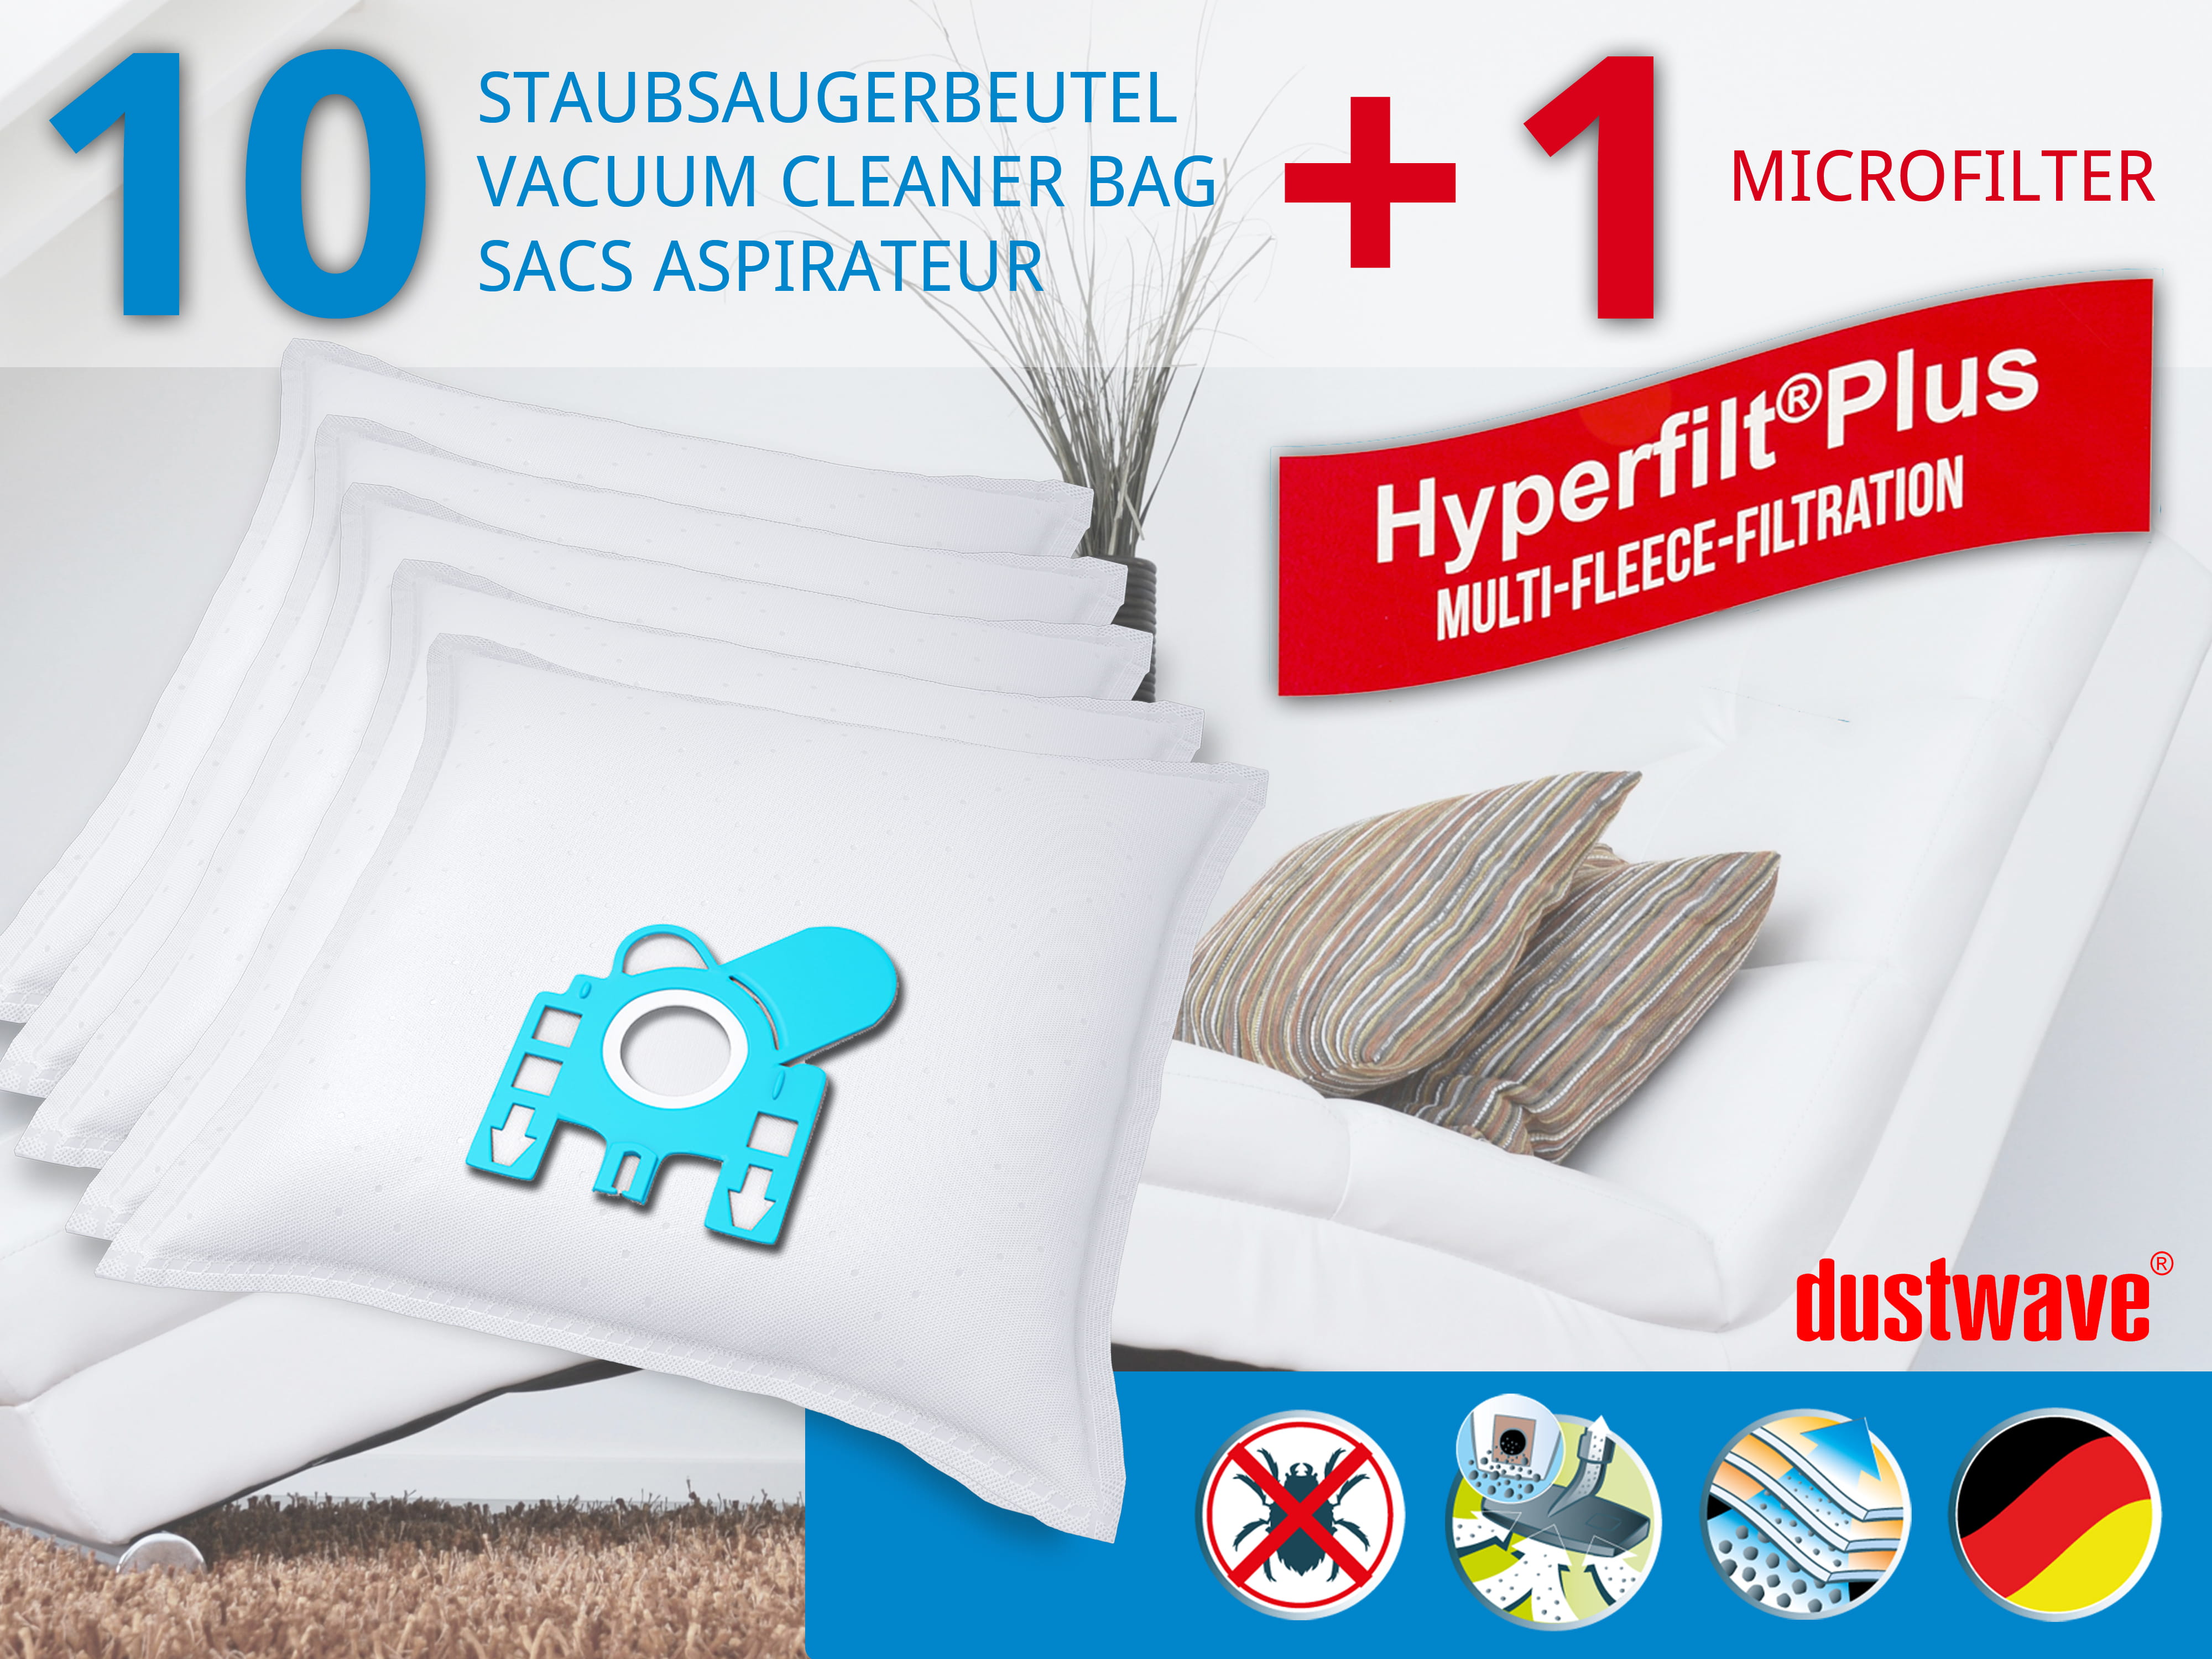 Dustwave® 10 Staubsaugerbeutel für Hoover TFB2283 013 FreeMotion - hocheffizient, mehrlagiges Mikrovlies mit Hygieneverschluss - Made in Germany